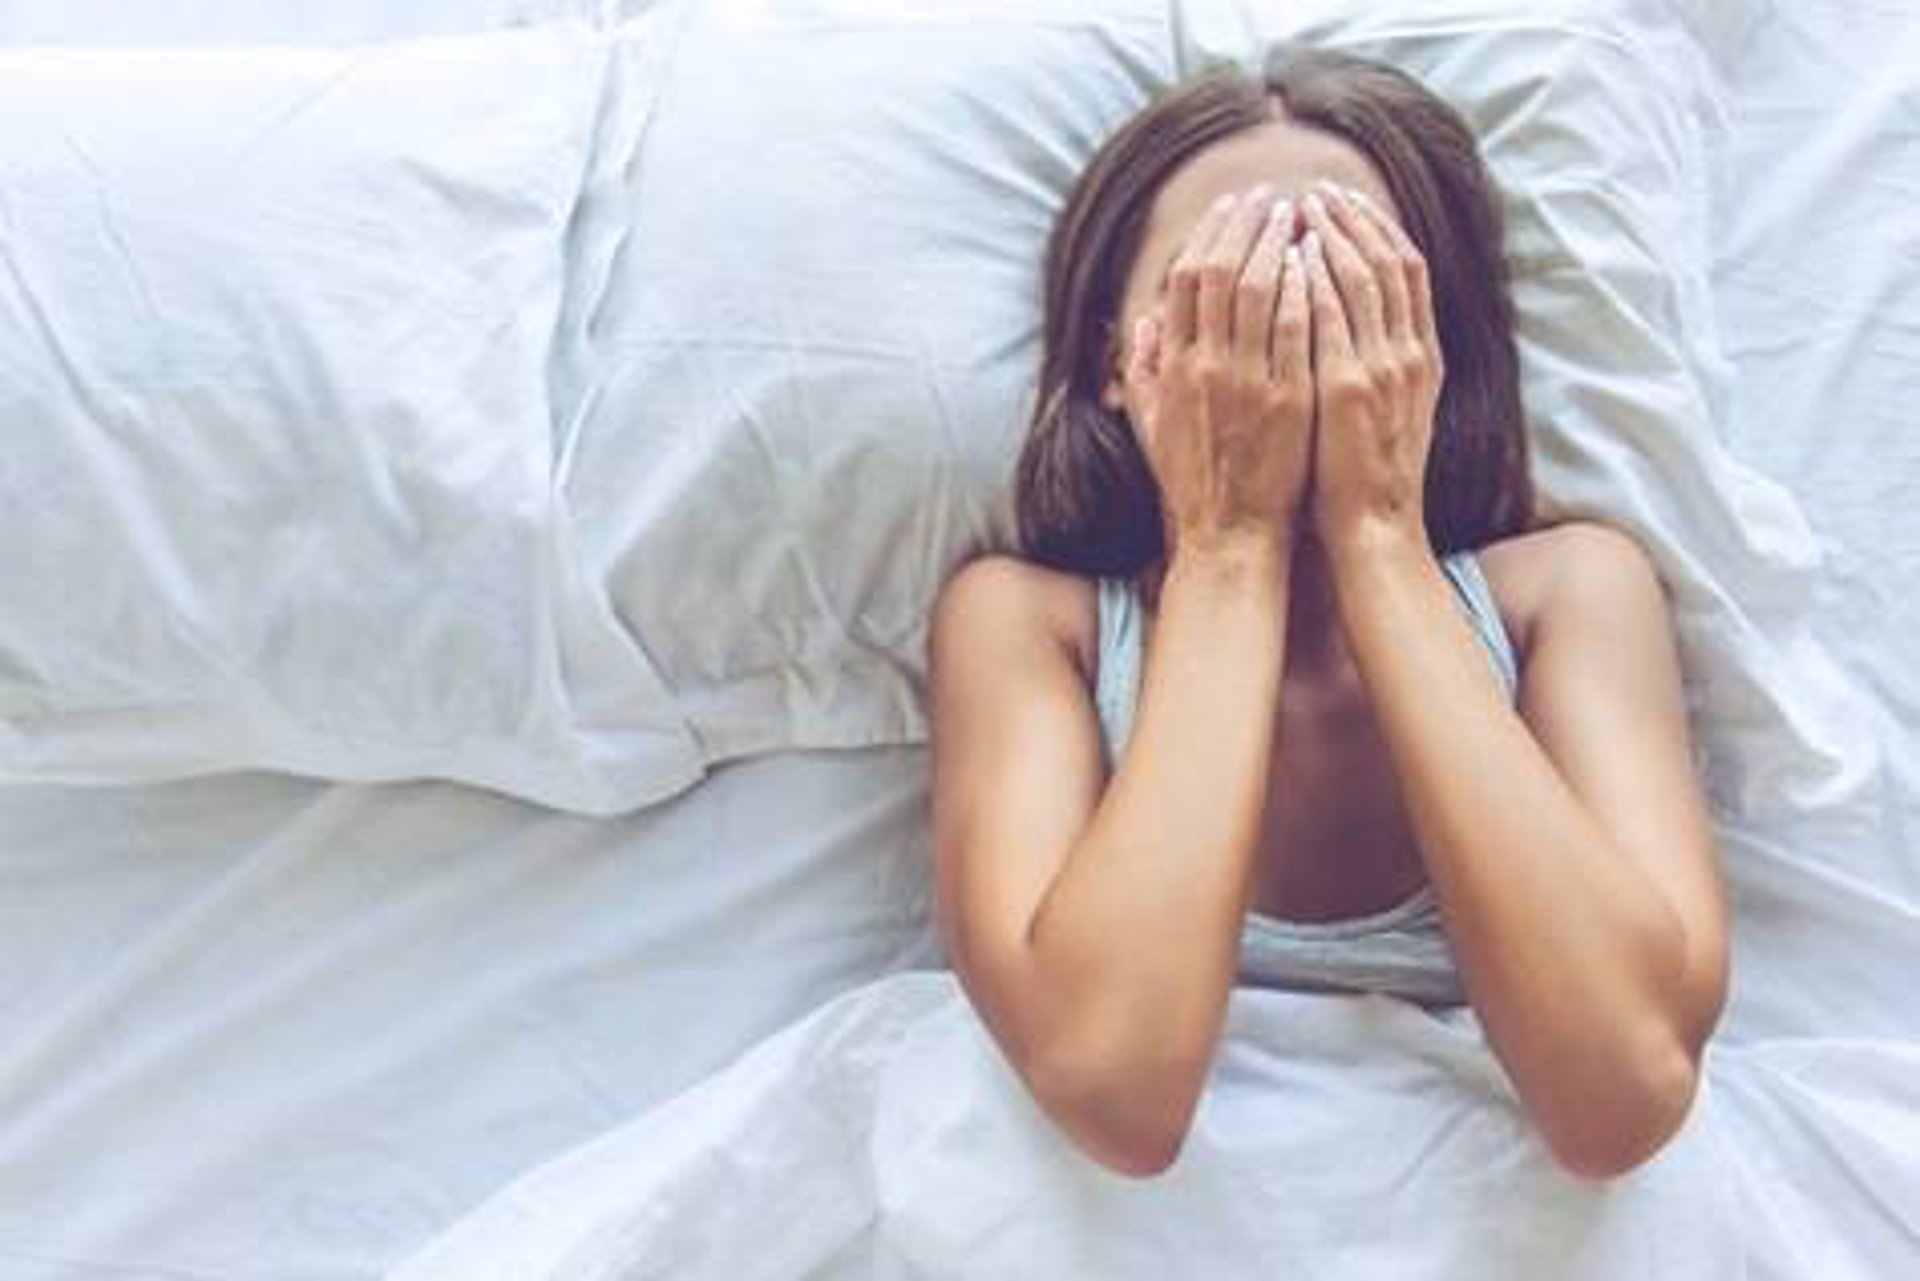 La narcolepsia es una enfermedad rara, infradiagnosticada e incomprendida cuyo síntoma más conocido es la somnolencia diurna.